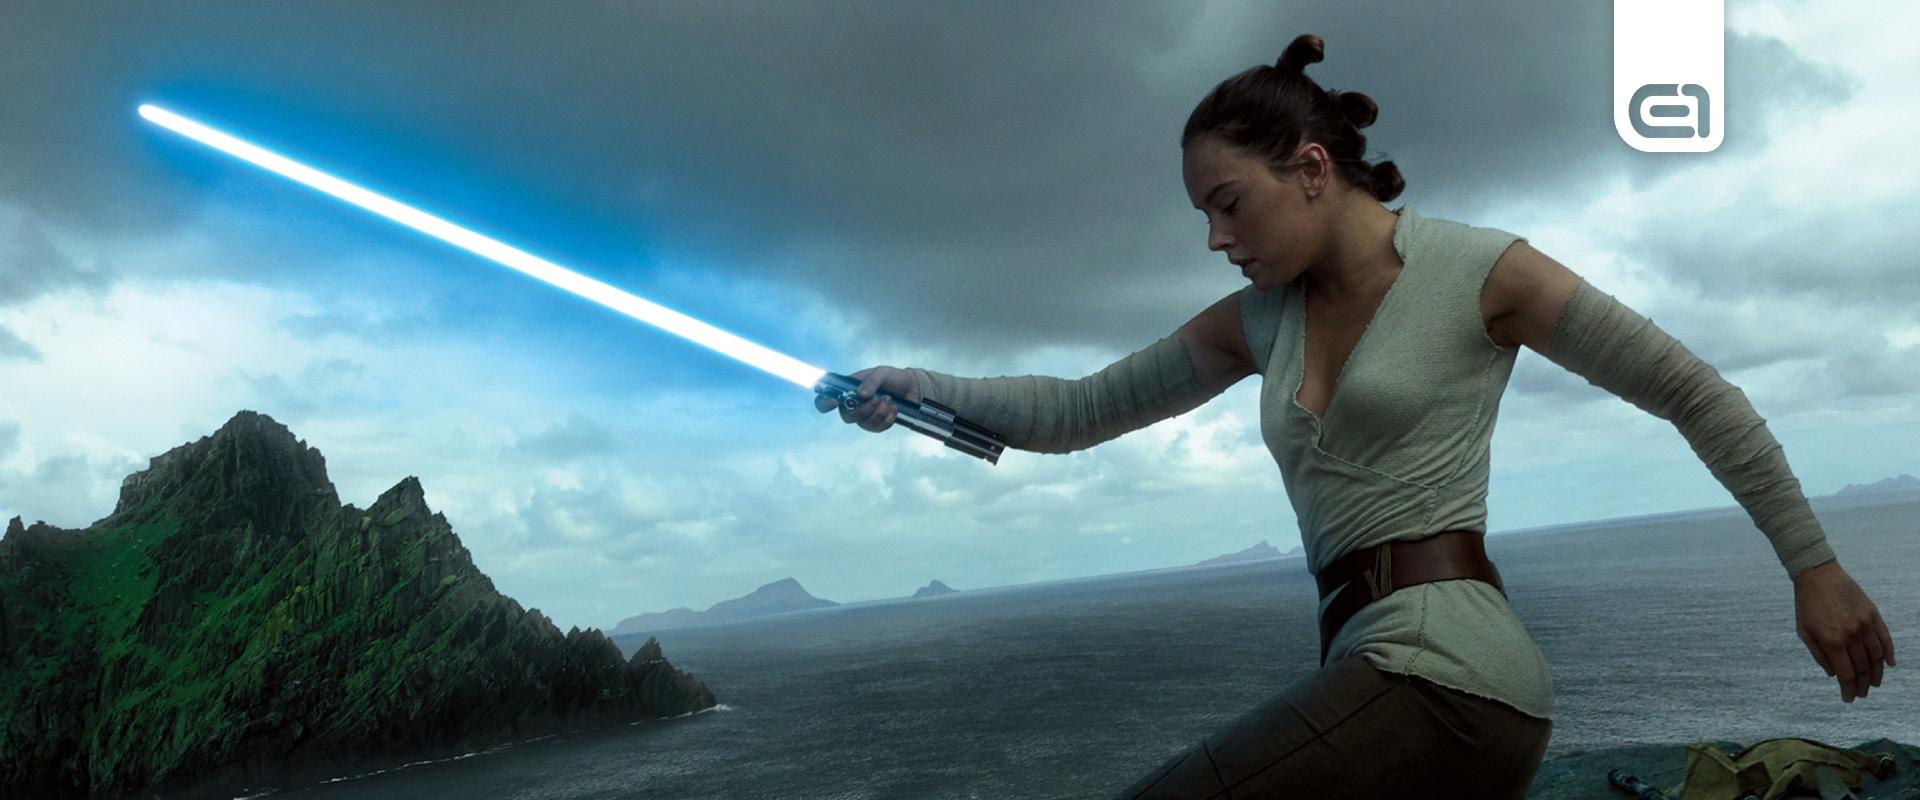 Jönnek az új Star Wars filmek, visszatér Rey Skywalker is!